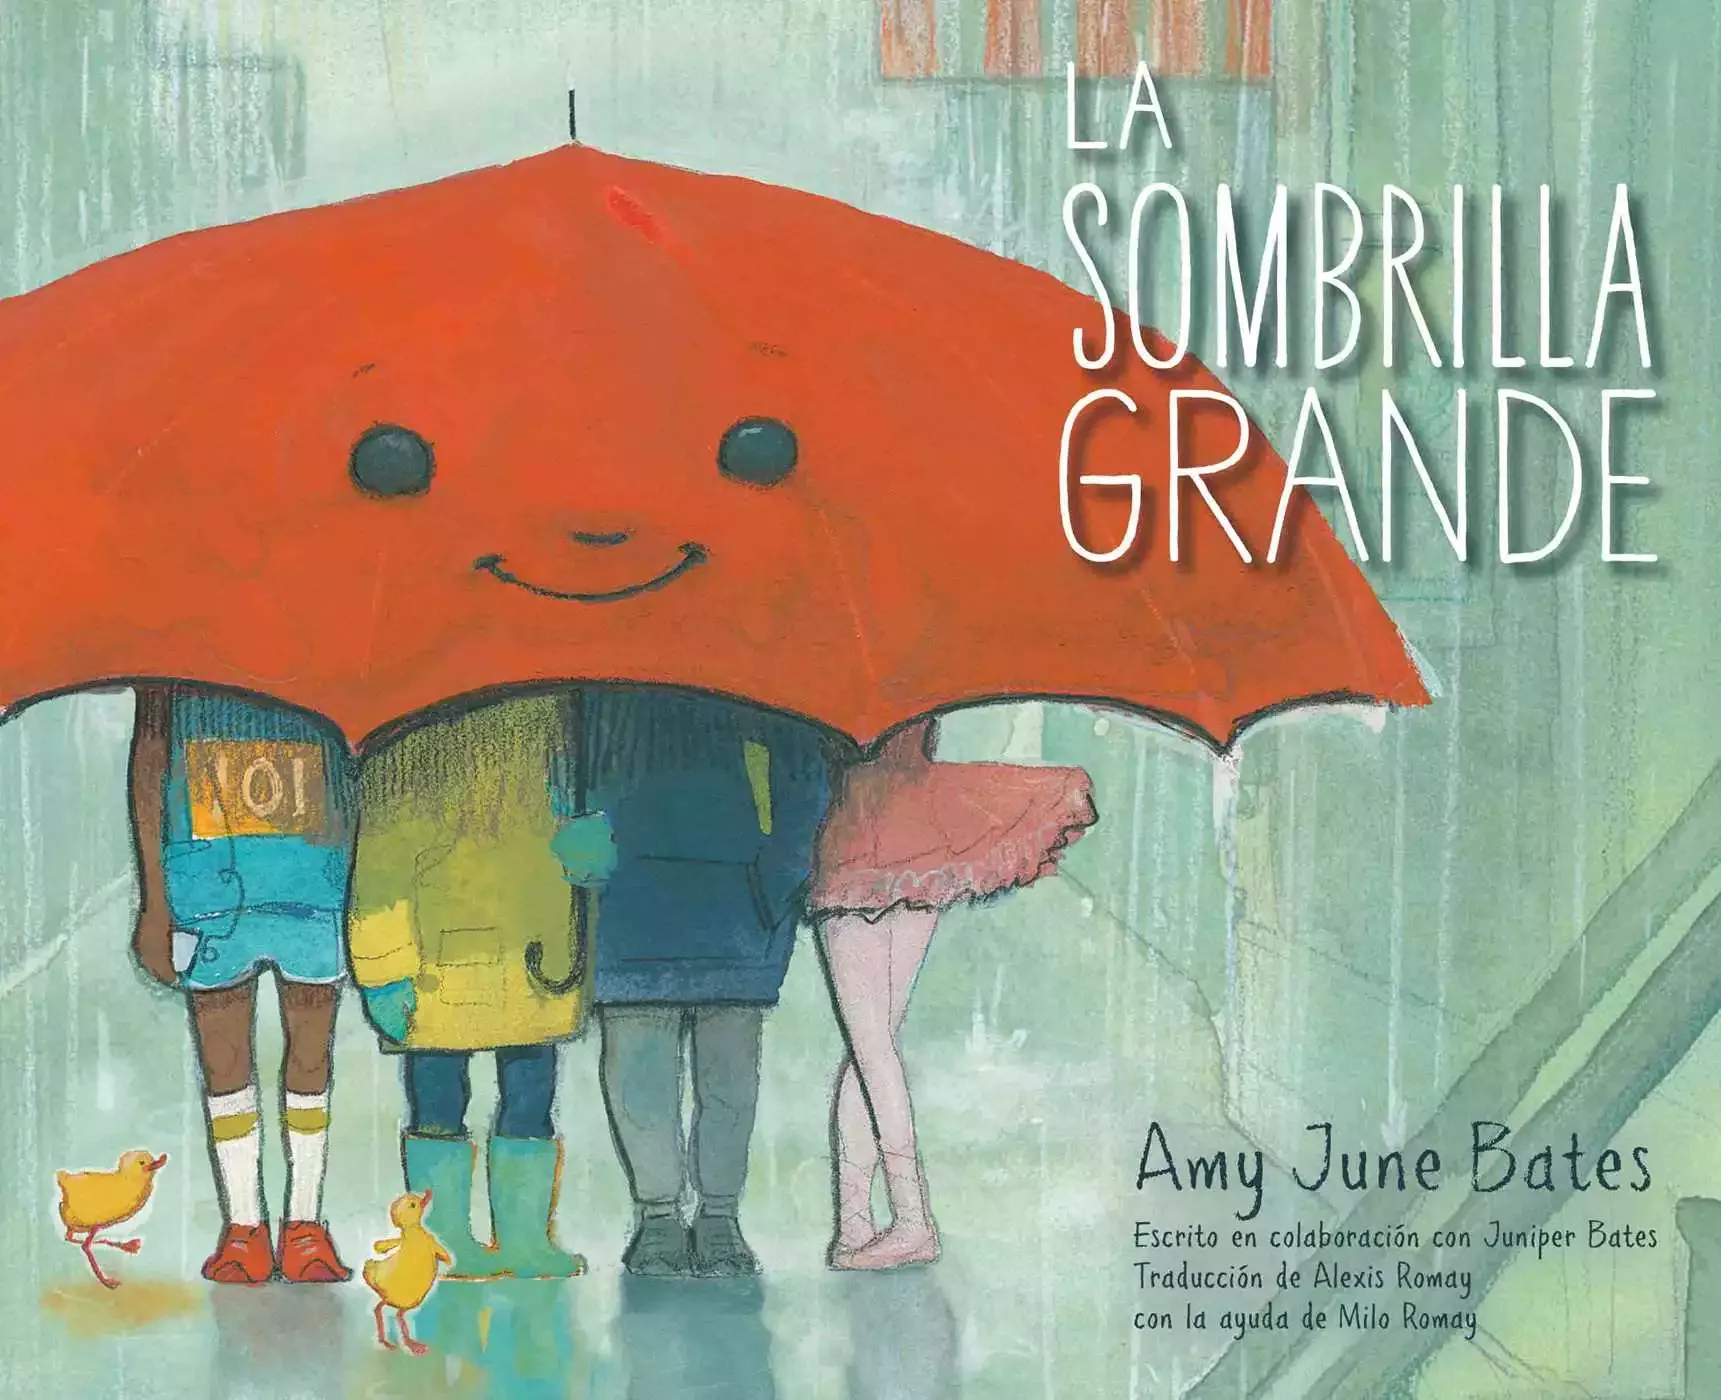 Cover of La sombrilla grande, Spanish edition of The Big Umbrella